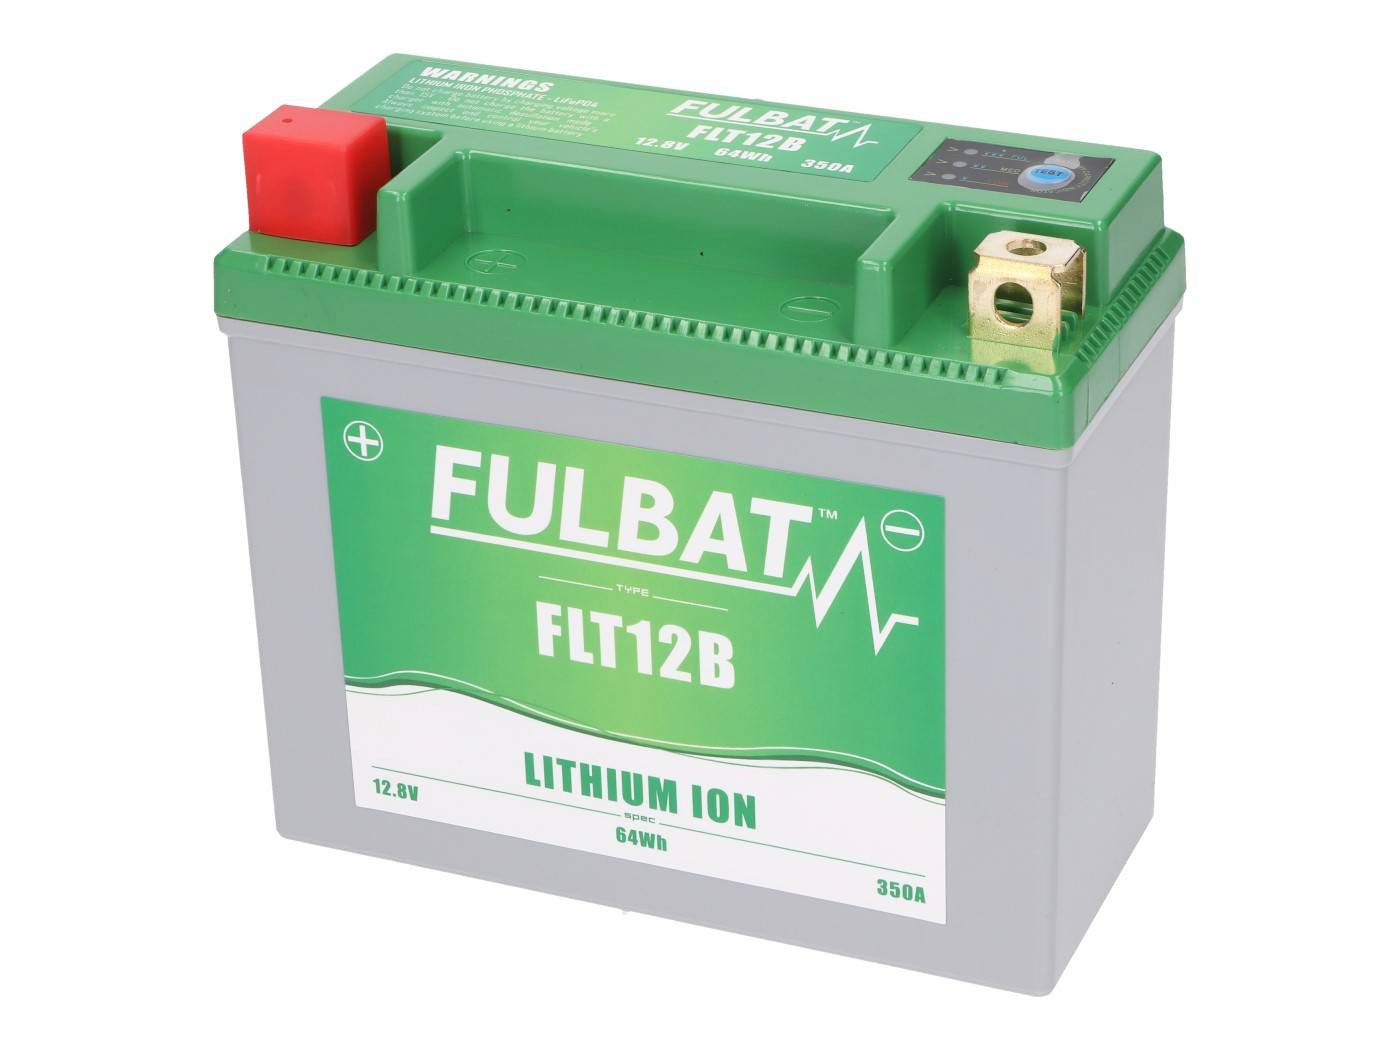 Fulbat FLT12B lítium-ion akkumulátor